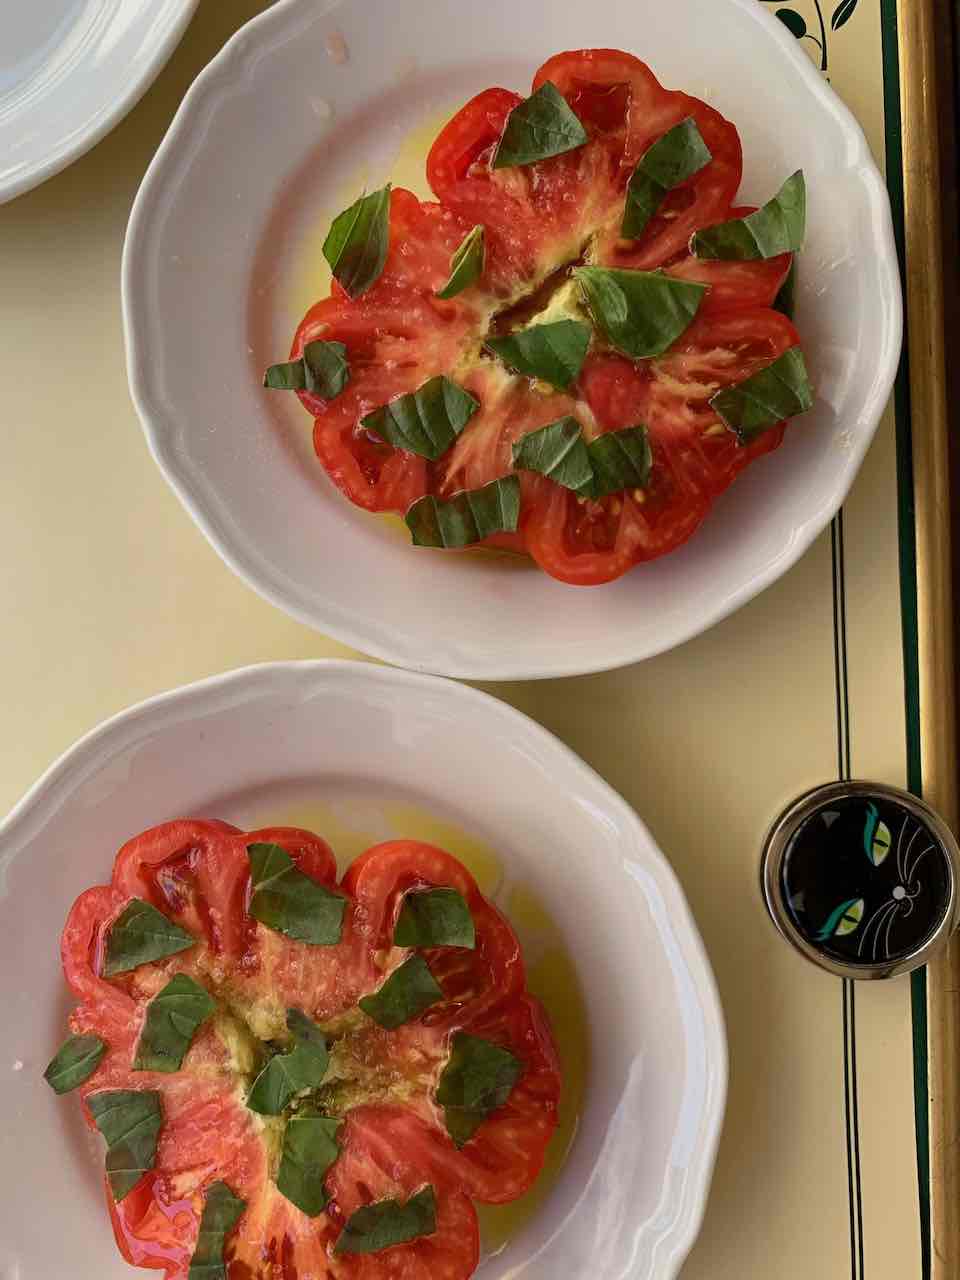 Tomatoes at Cibreo